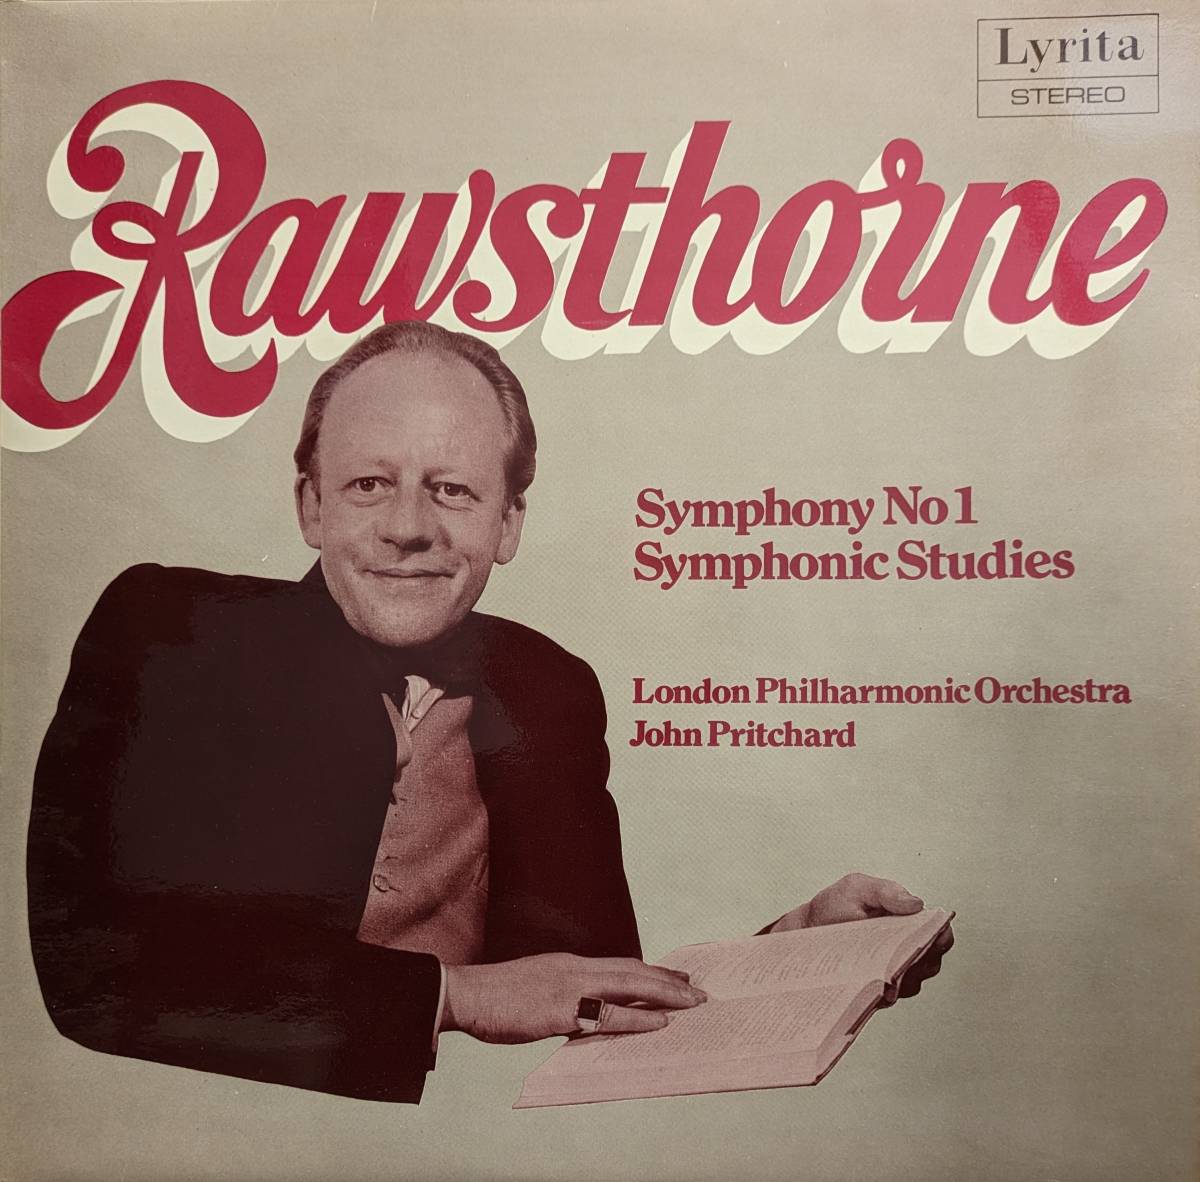  импорт LP запись John *p richa do/London Phil Rawsthorne симфония 1 номер & реверберация . тренировка искривление 